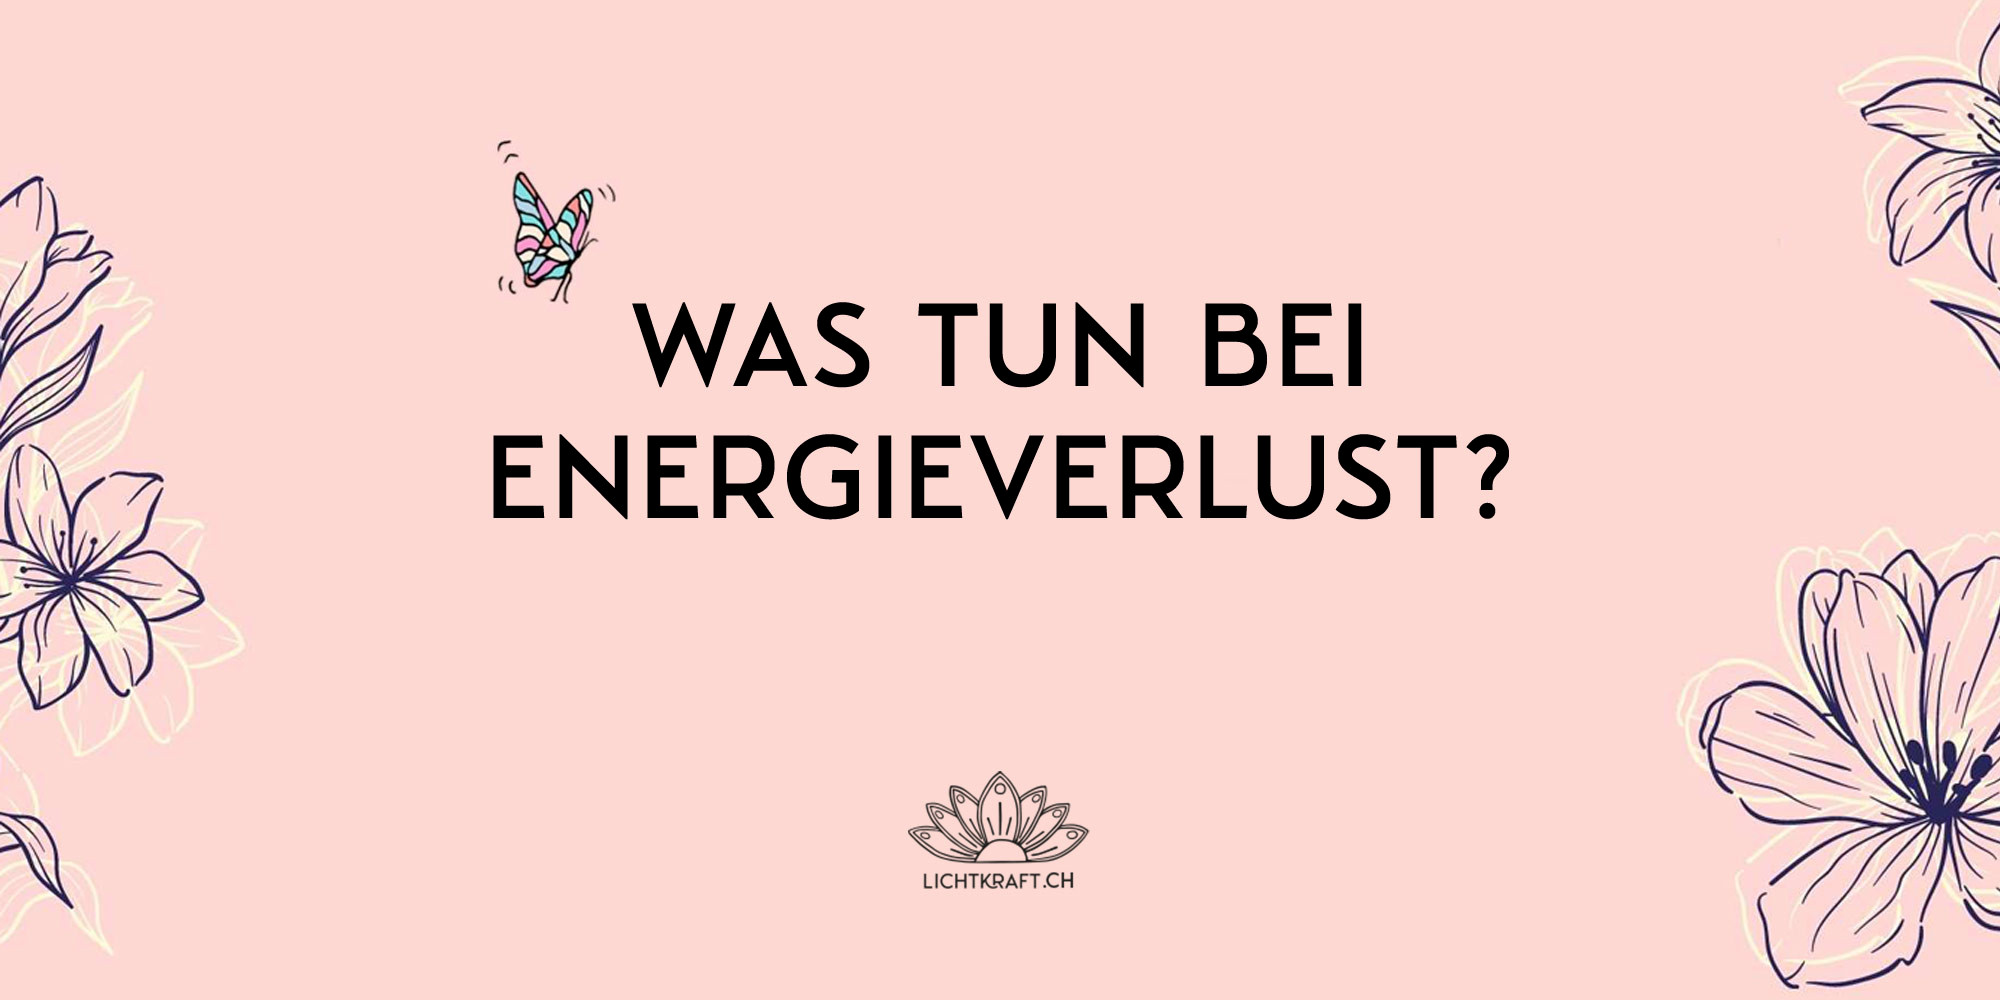 Blumenillustration mit Text: Was tun bei Energieverlust?